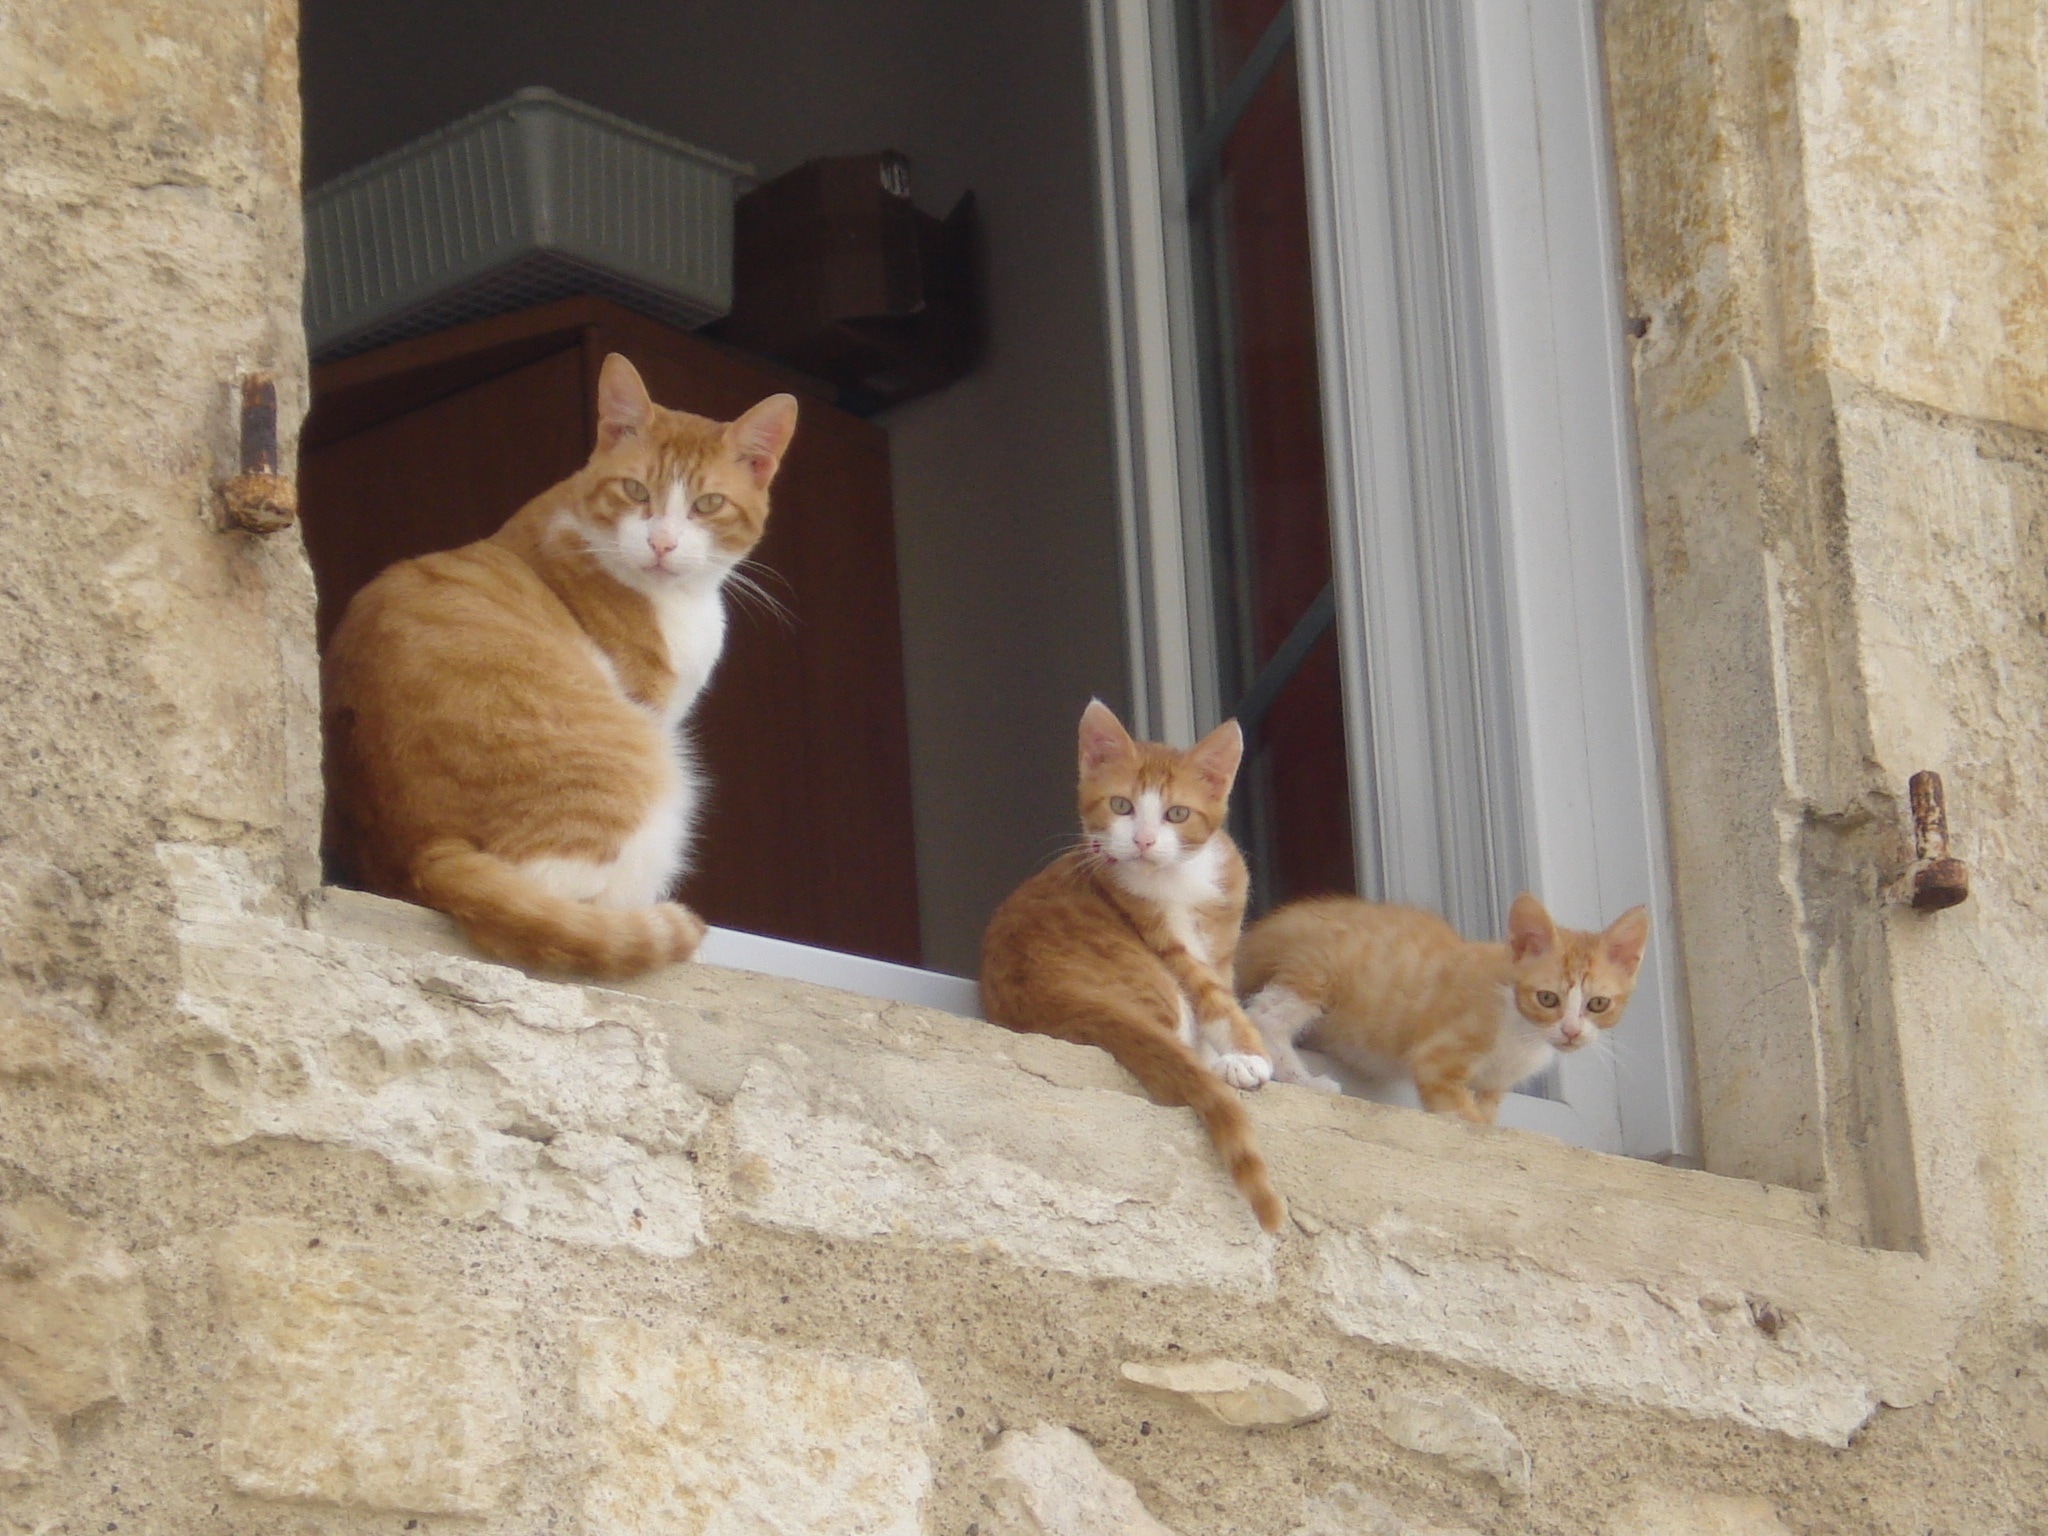 3 orange tabby cats